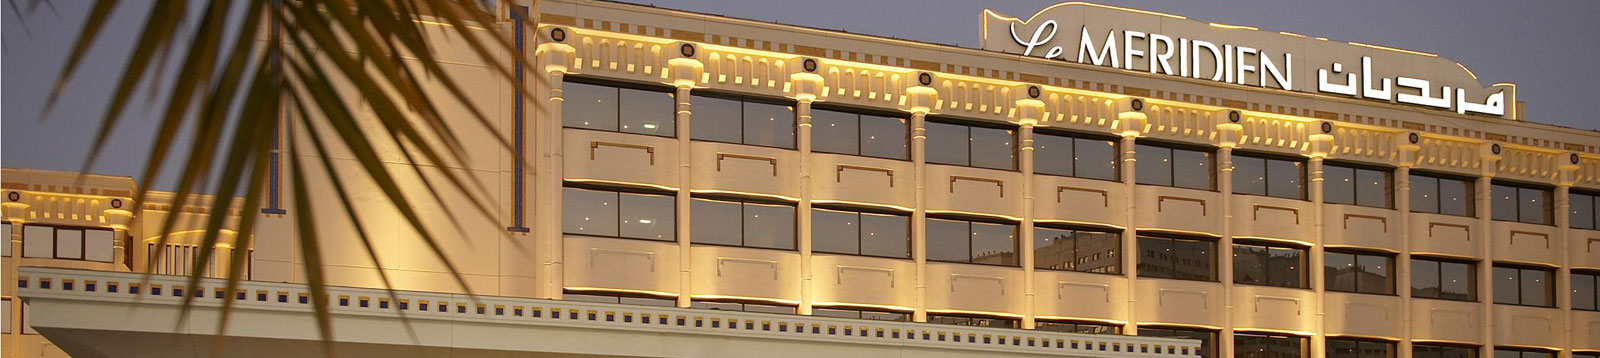 Le Meridien Hotel Abu Dhabi